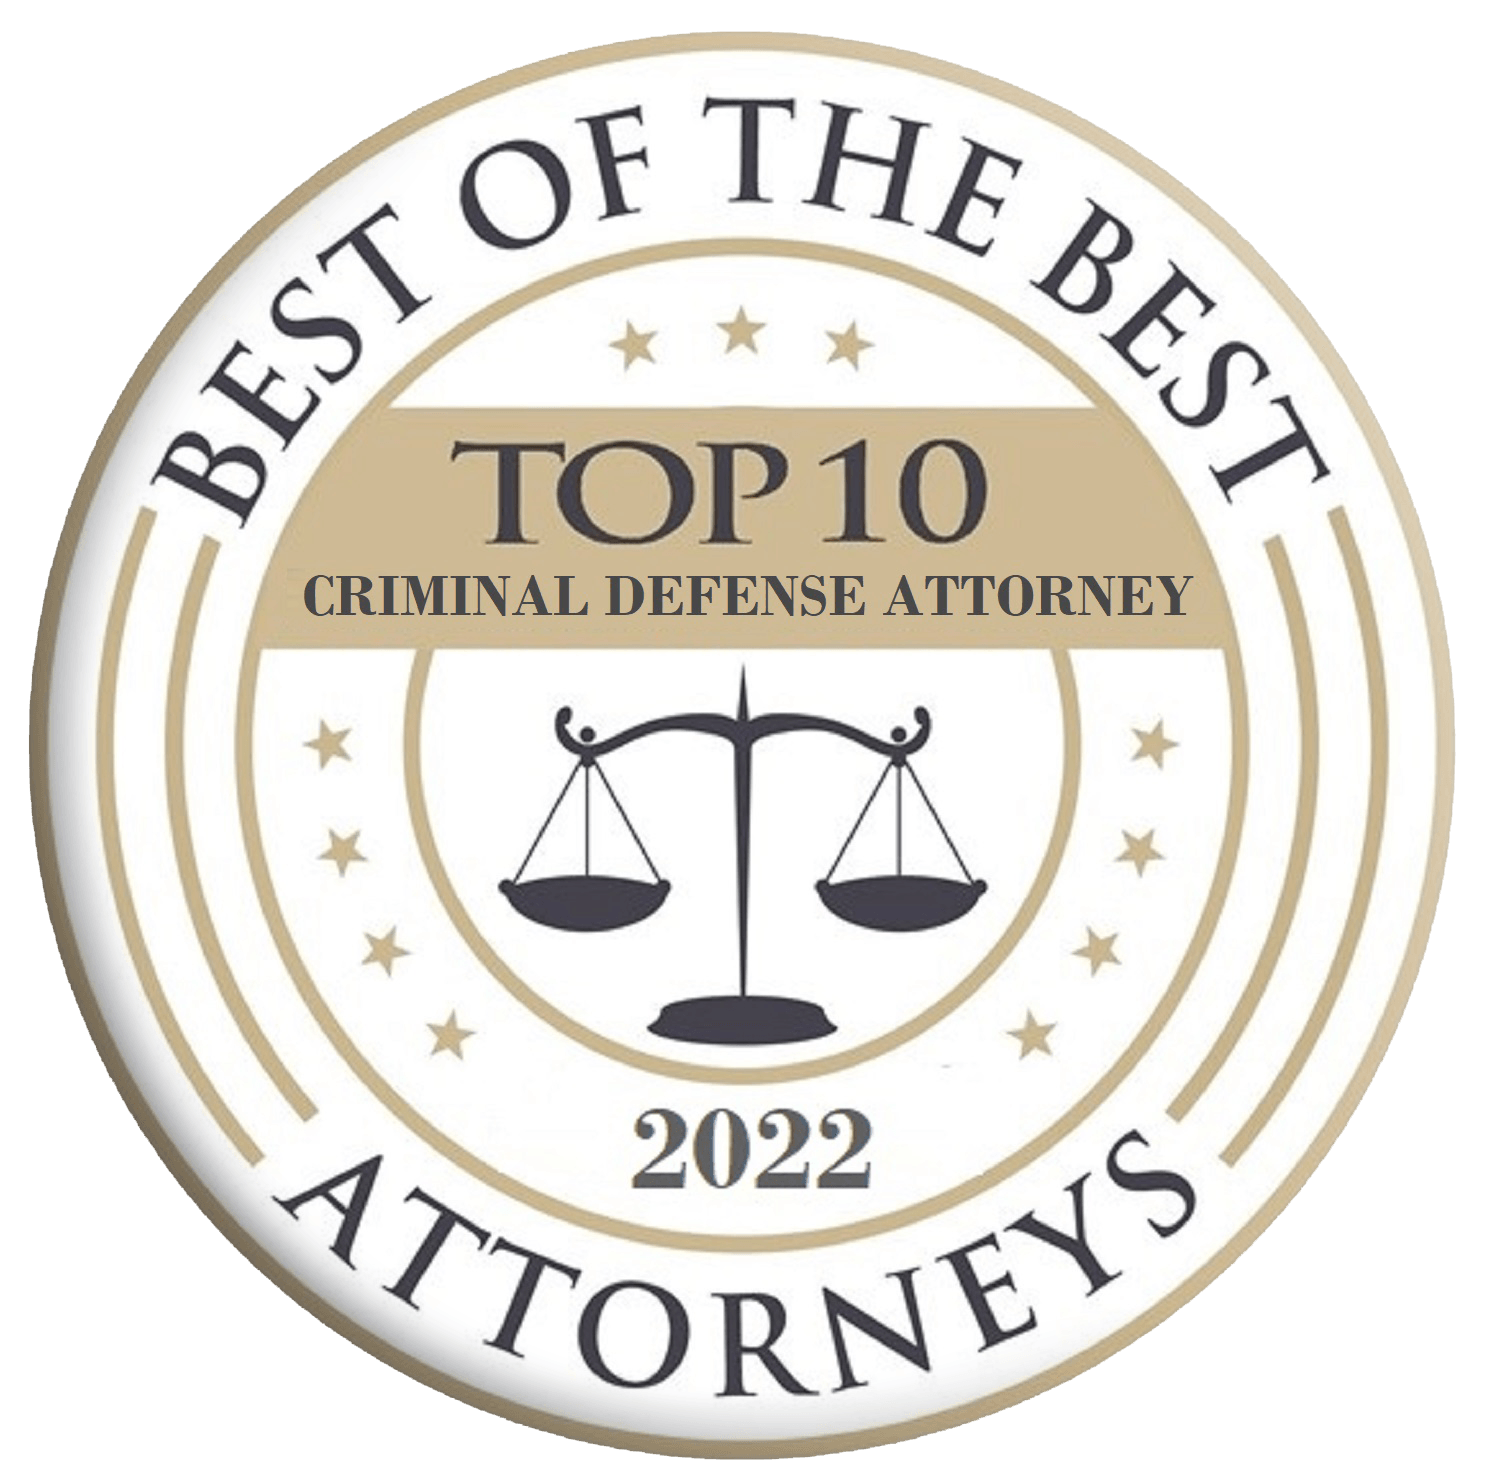 America's Top 10 Criminal Defense Attorneys